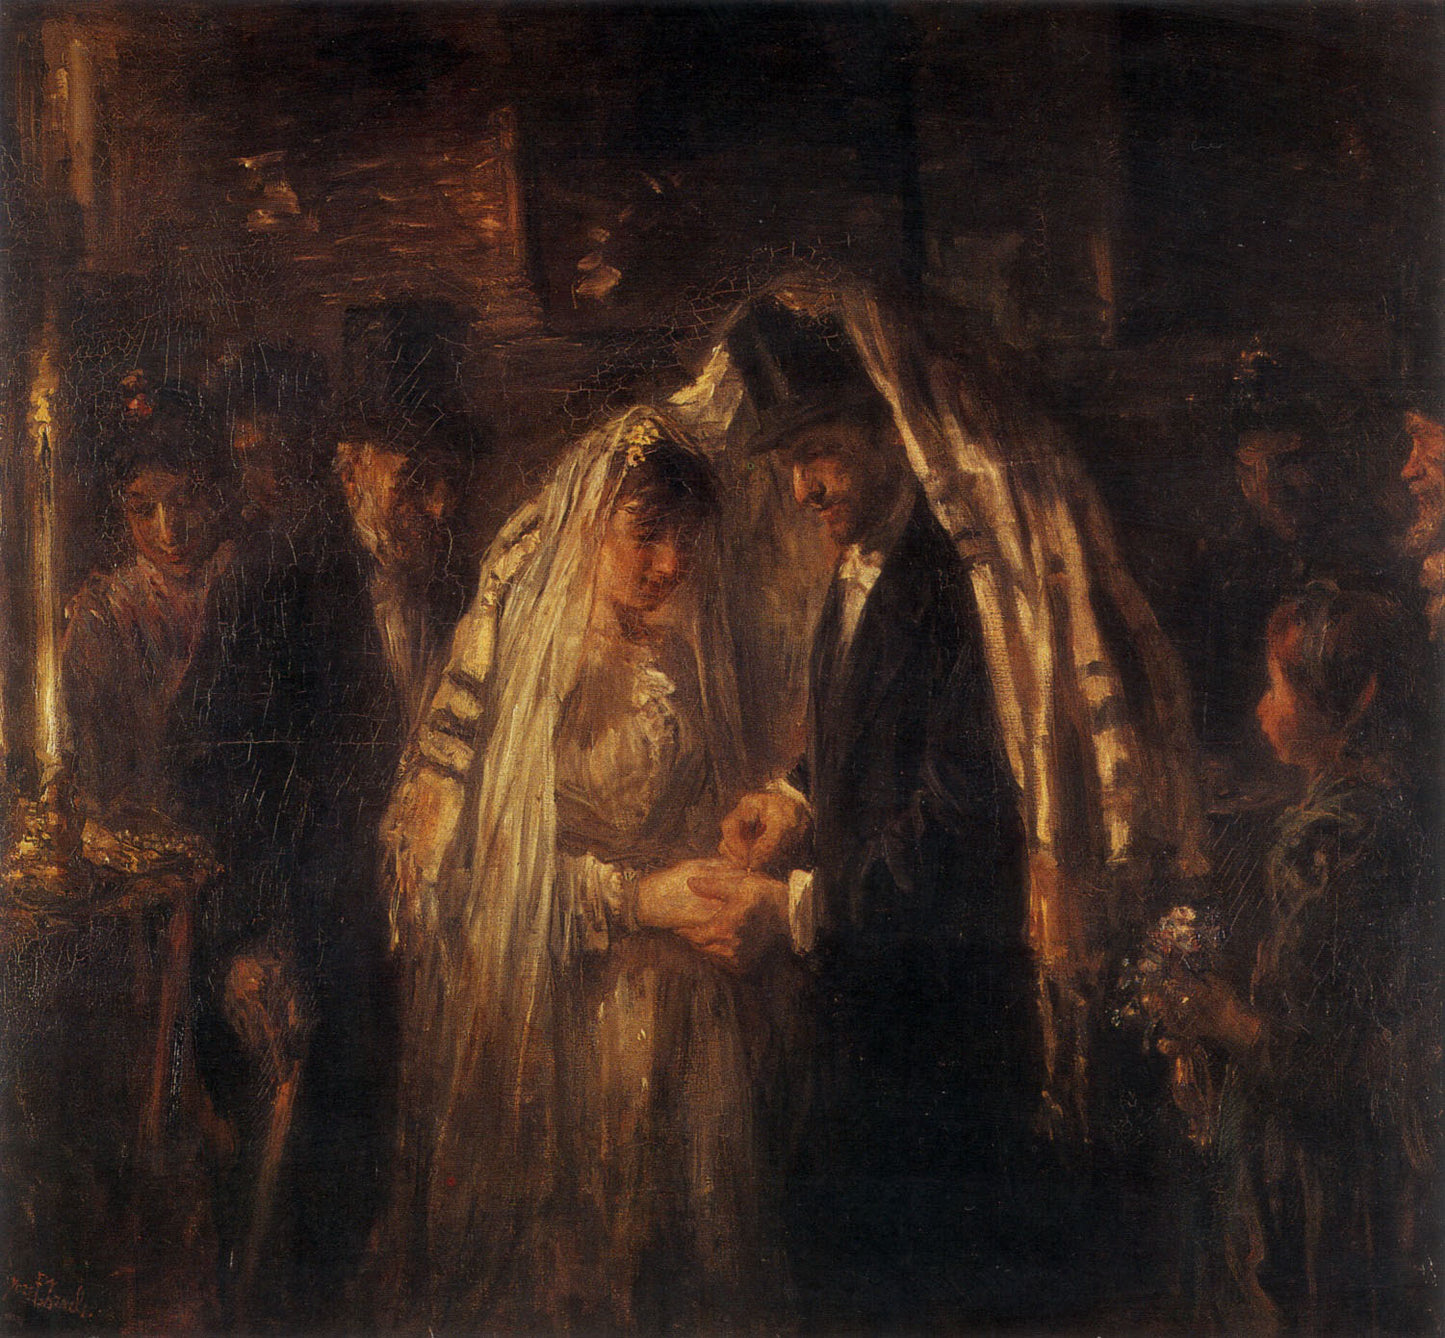 A Jewish Wedding